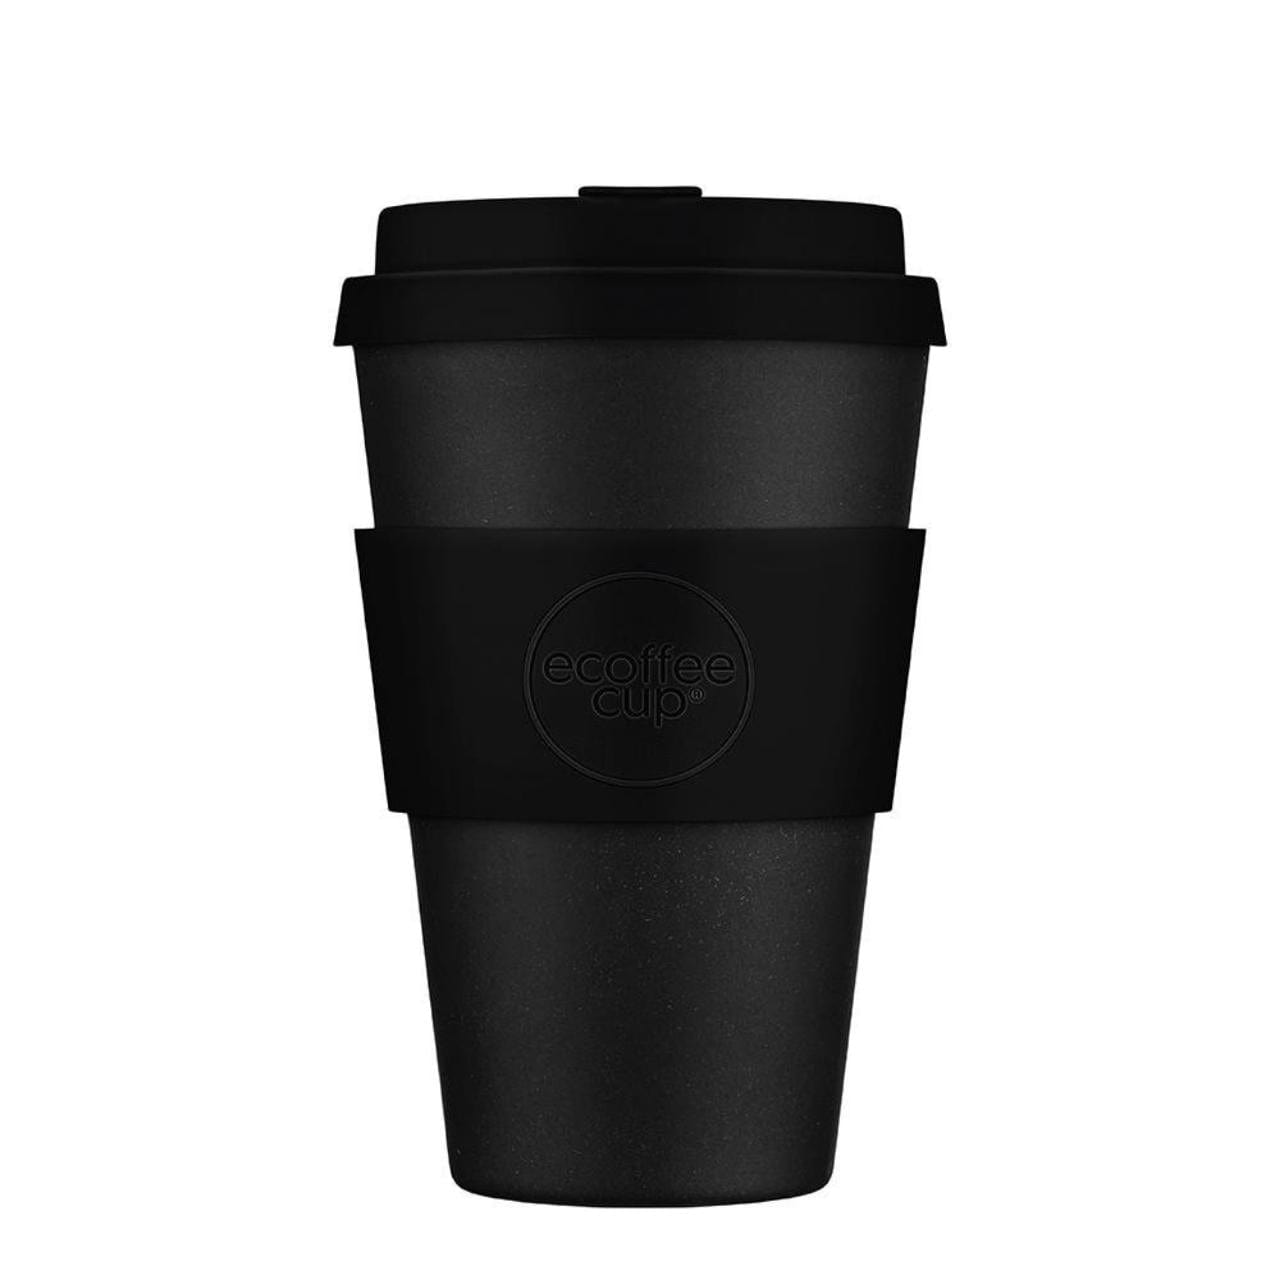 Ecoffee Cup Koffie- en Theemokken Koffie- en theekop to go - 400ml | Kerr & Napier